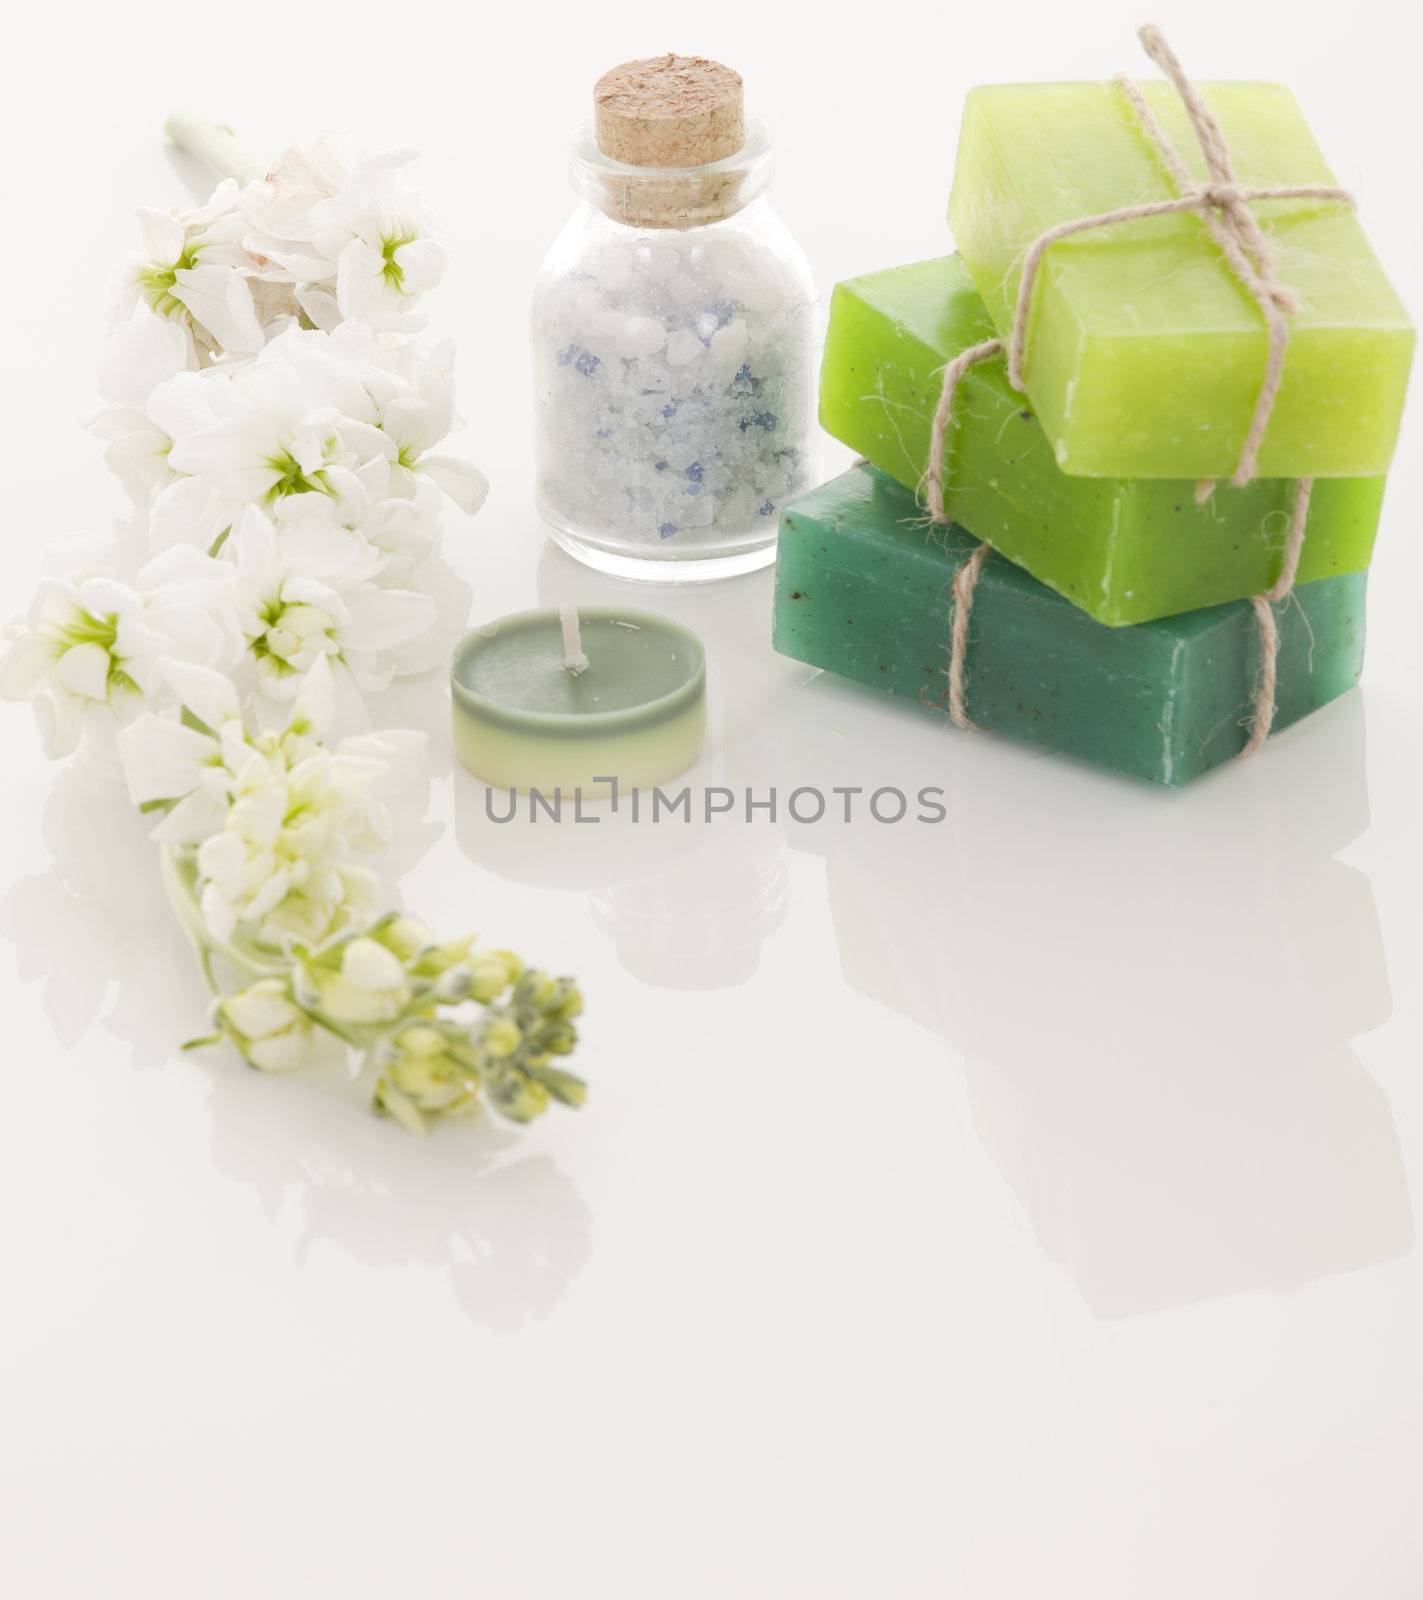 Handmade Soap closeup by senkaya